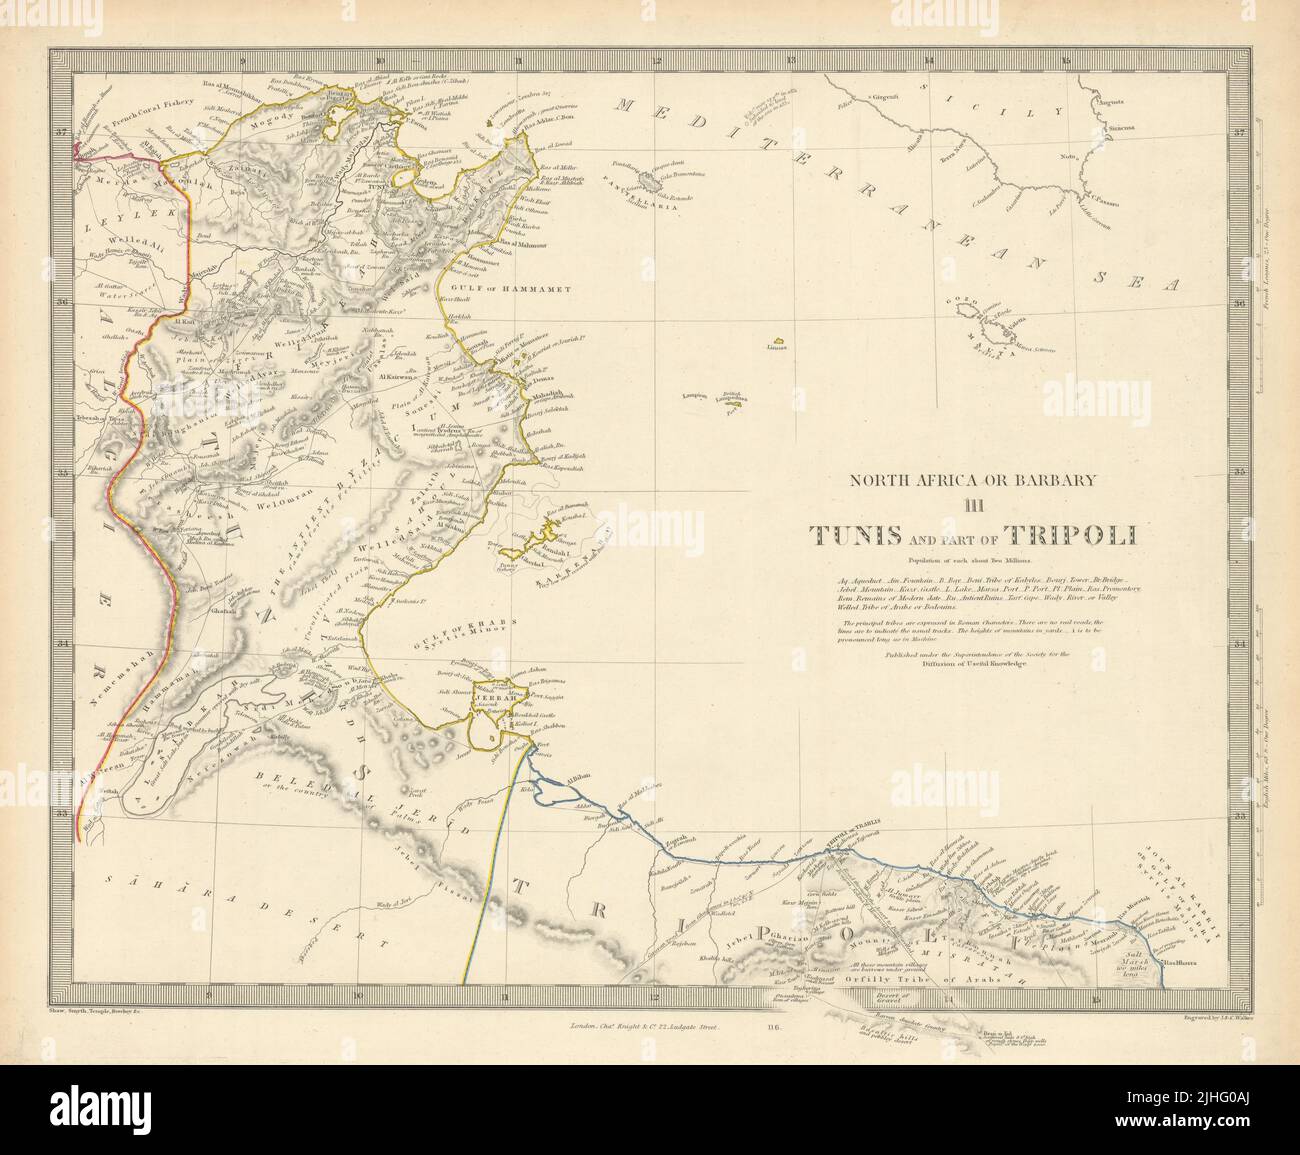 AFRIQUE DU NORD OU BARBARY III Tunis et une partie de Tripoli Tunisie Libye SDUK 1851 carte Banque D'Images